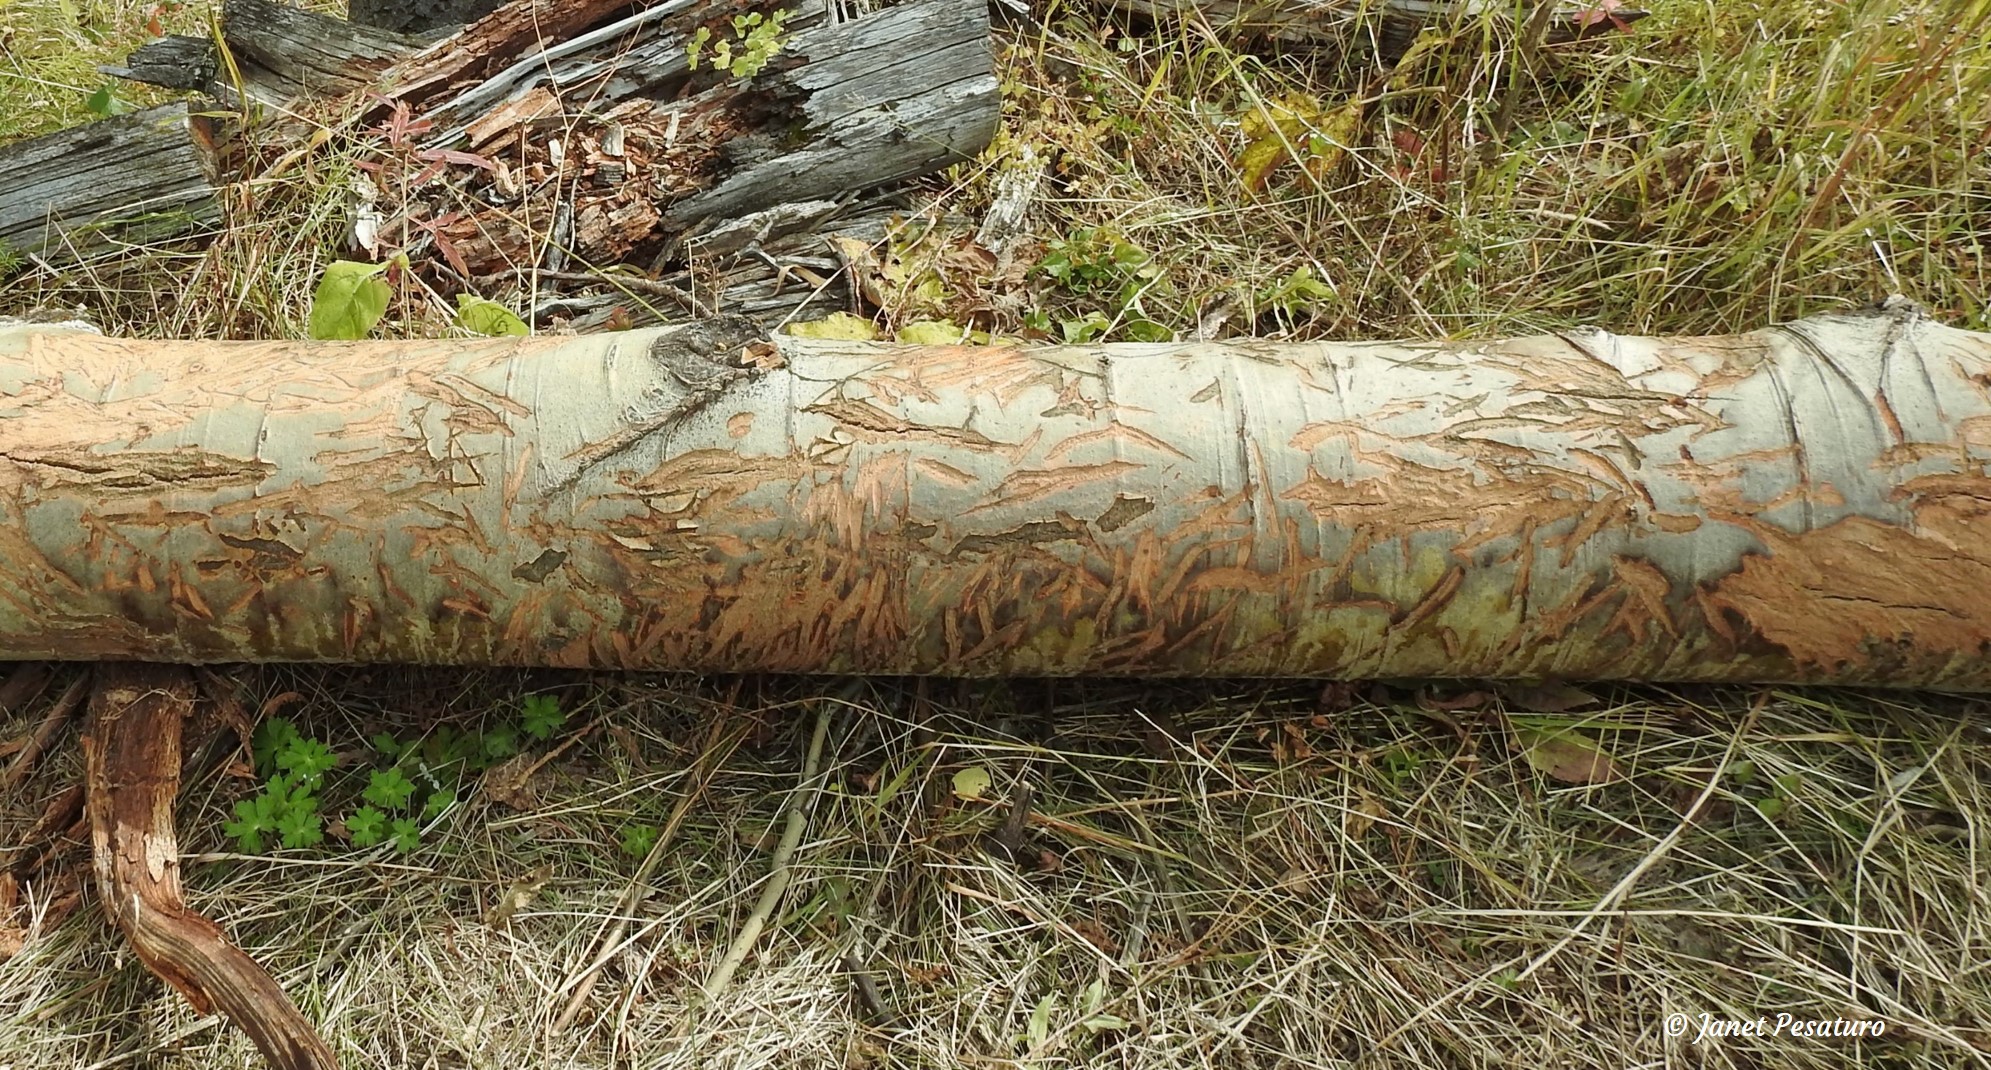 An aspen log with fresh sign of ungulates feeding on the bark.